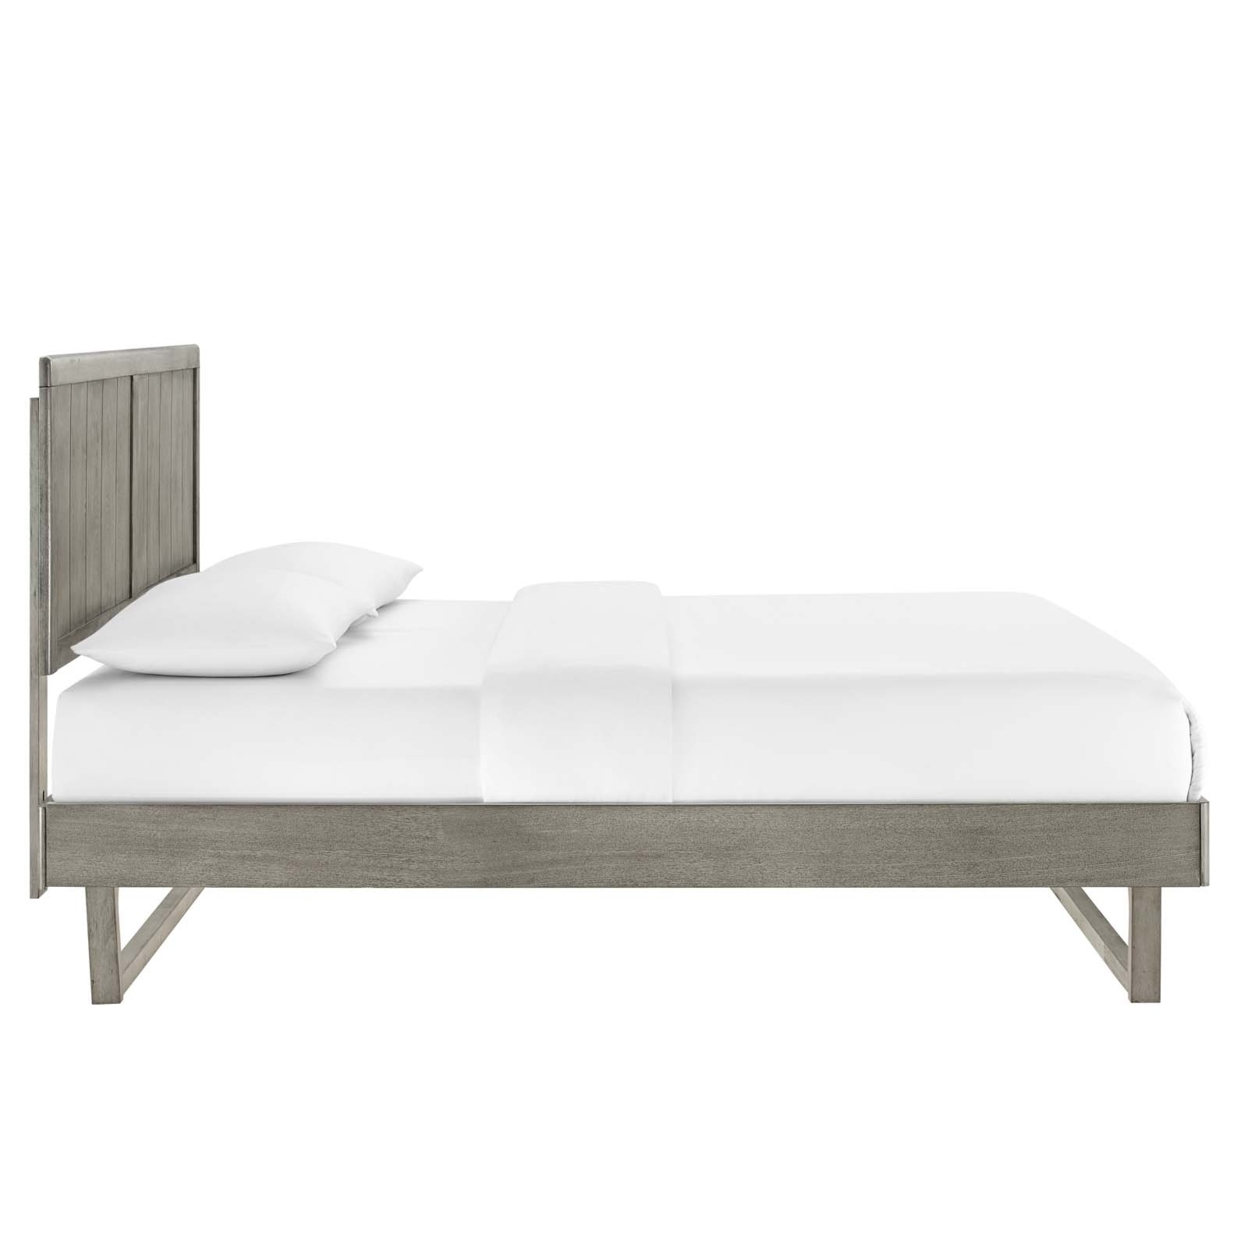 Alana King Wood Platform Bed With Angular Frame, Gray